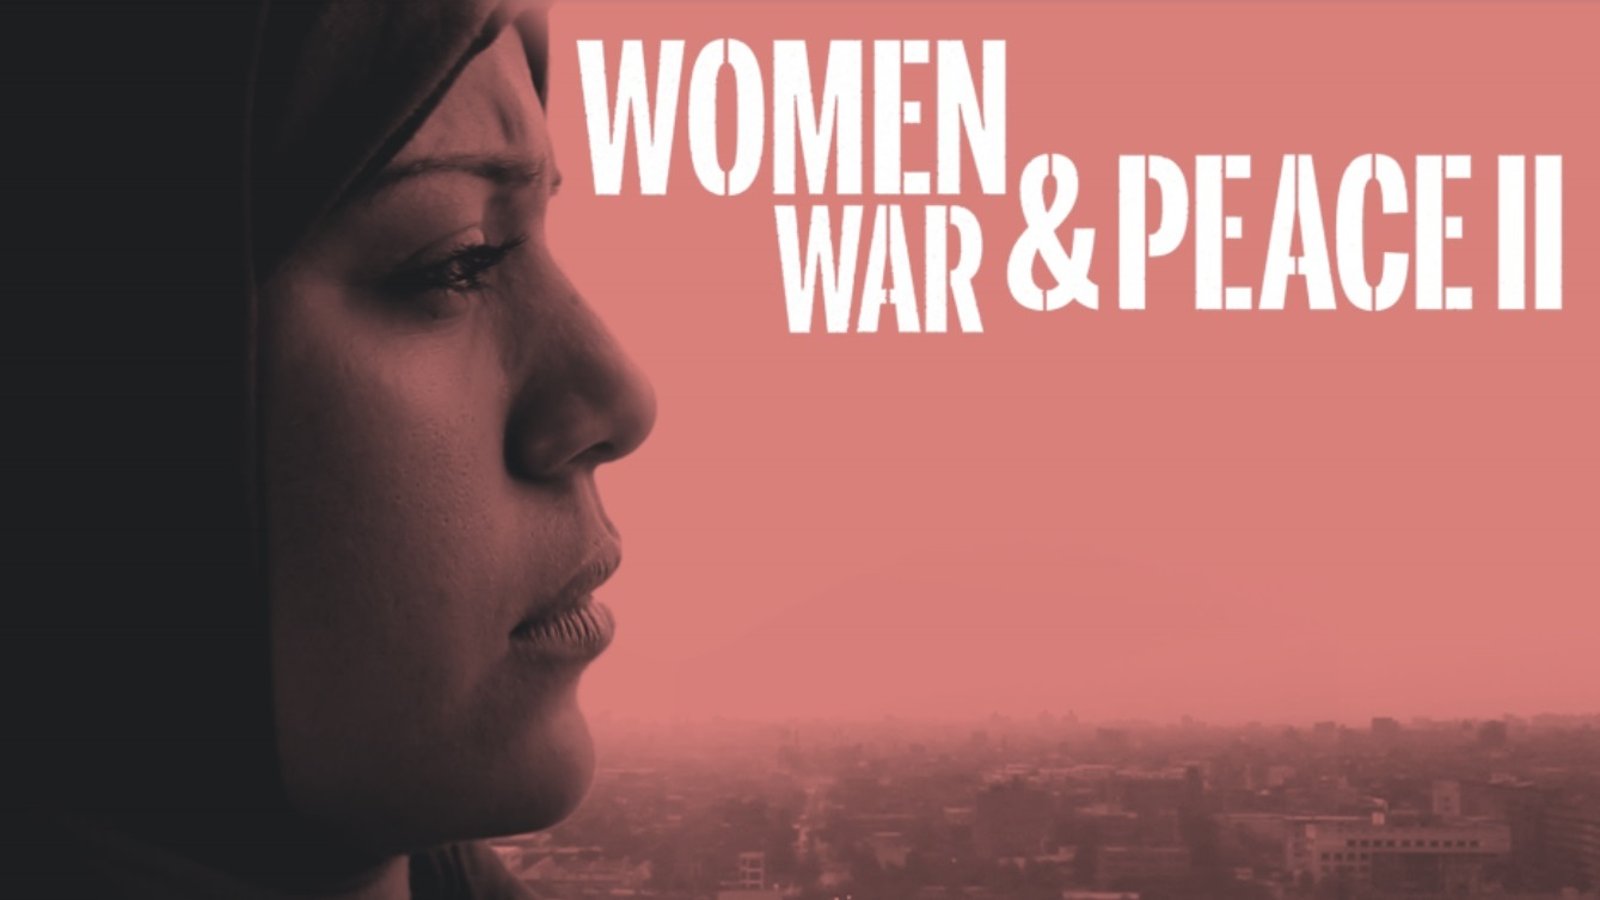 Women, War & Peace II